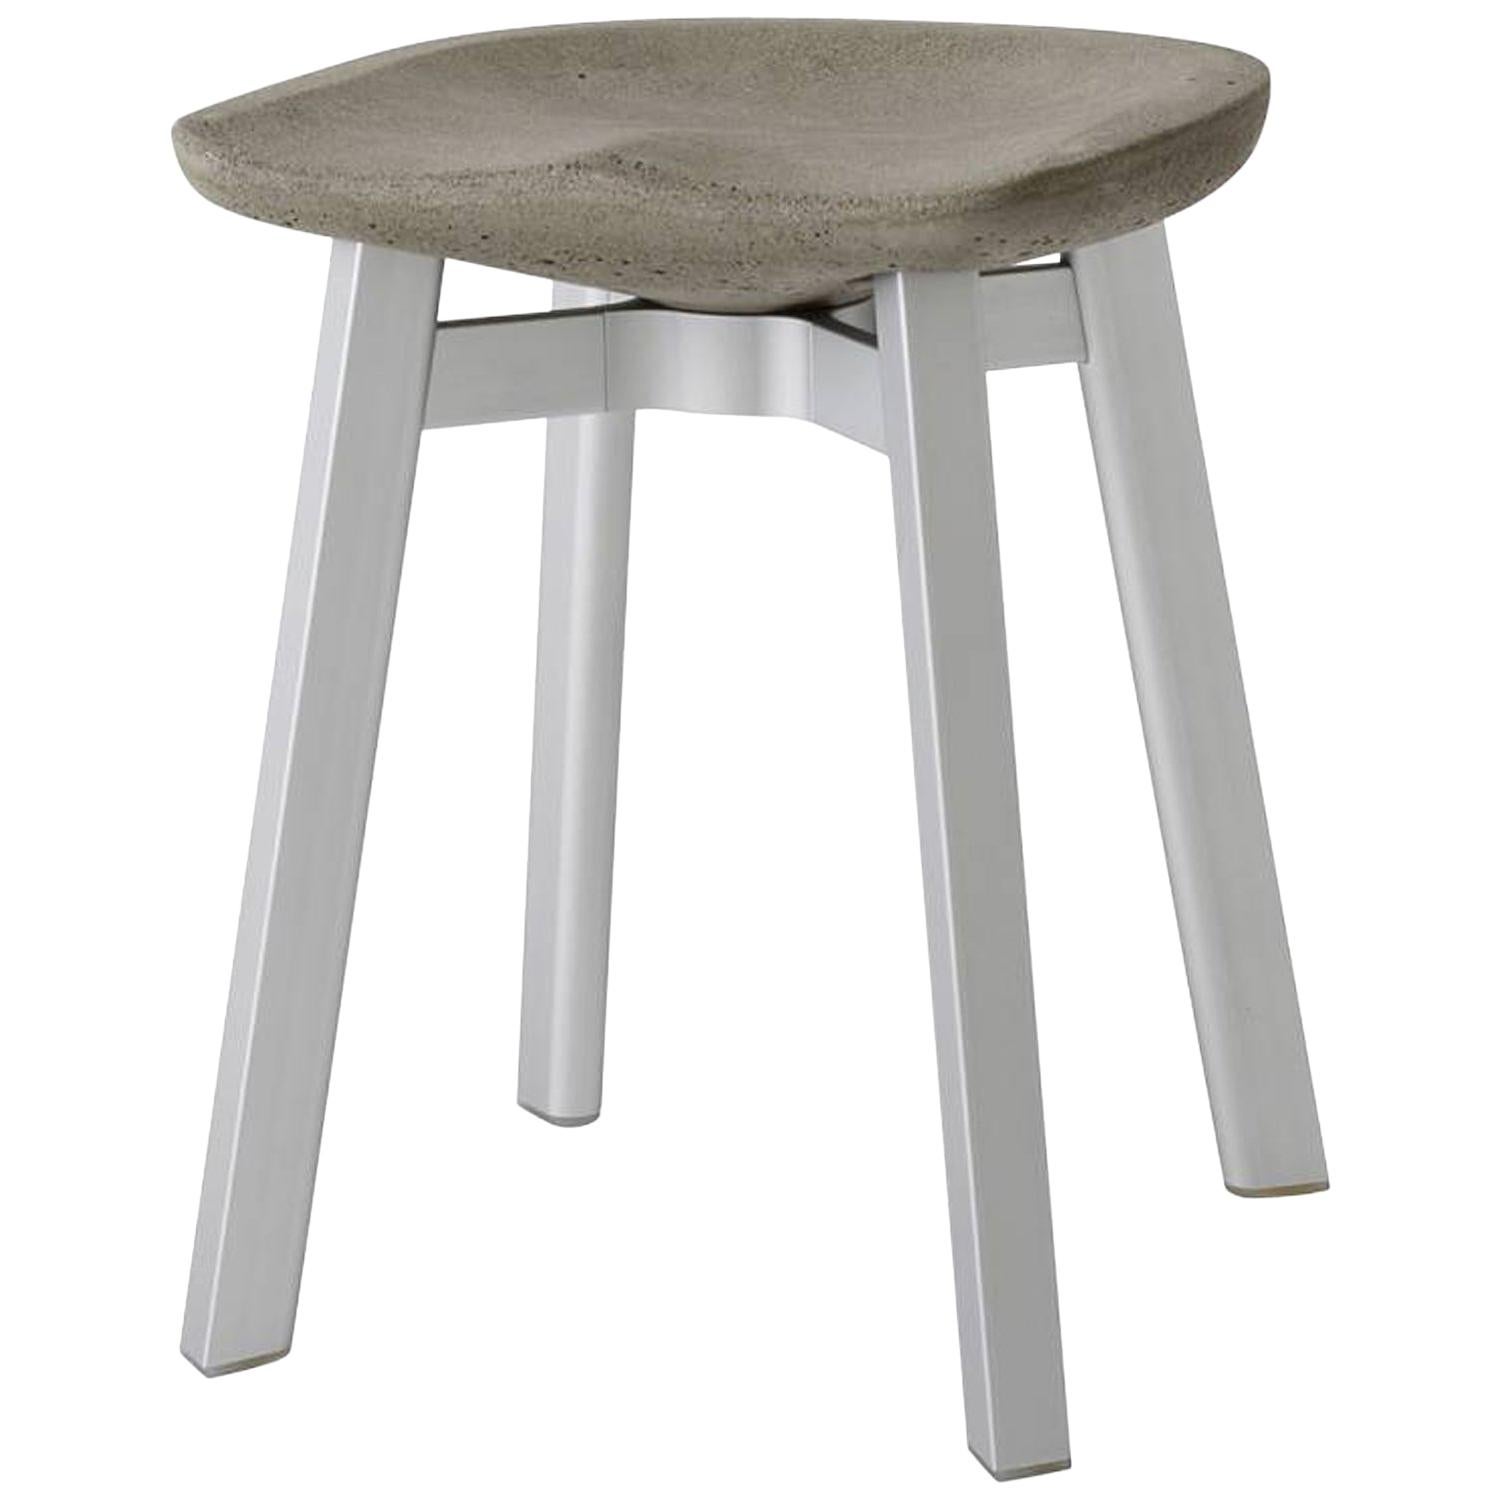 Emeco Su Small Stool in Natural Aluminum w/ Eco Concrete Seat by Nendo For Sale